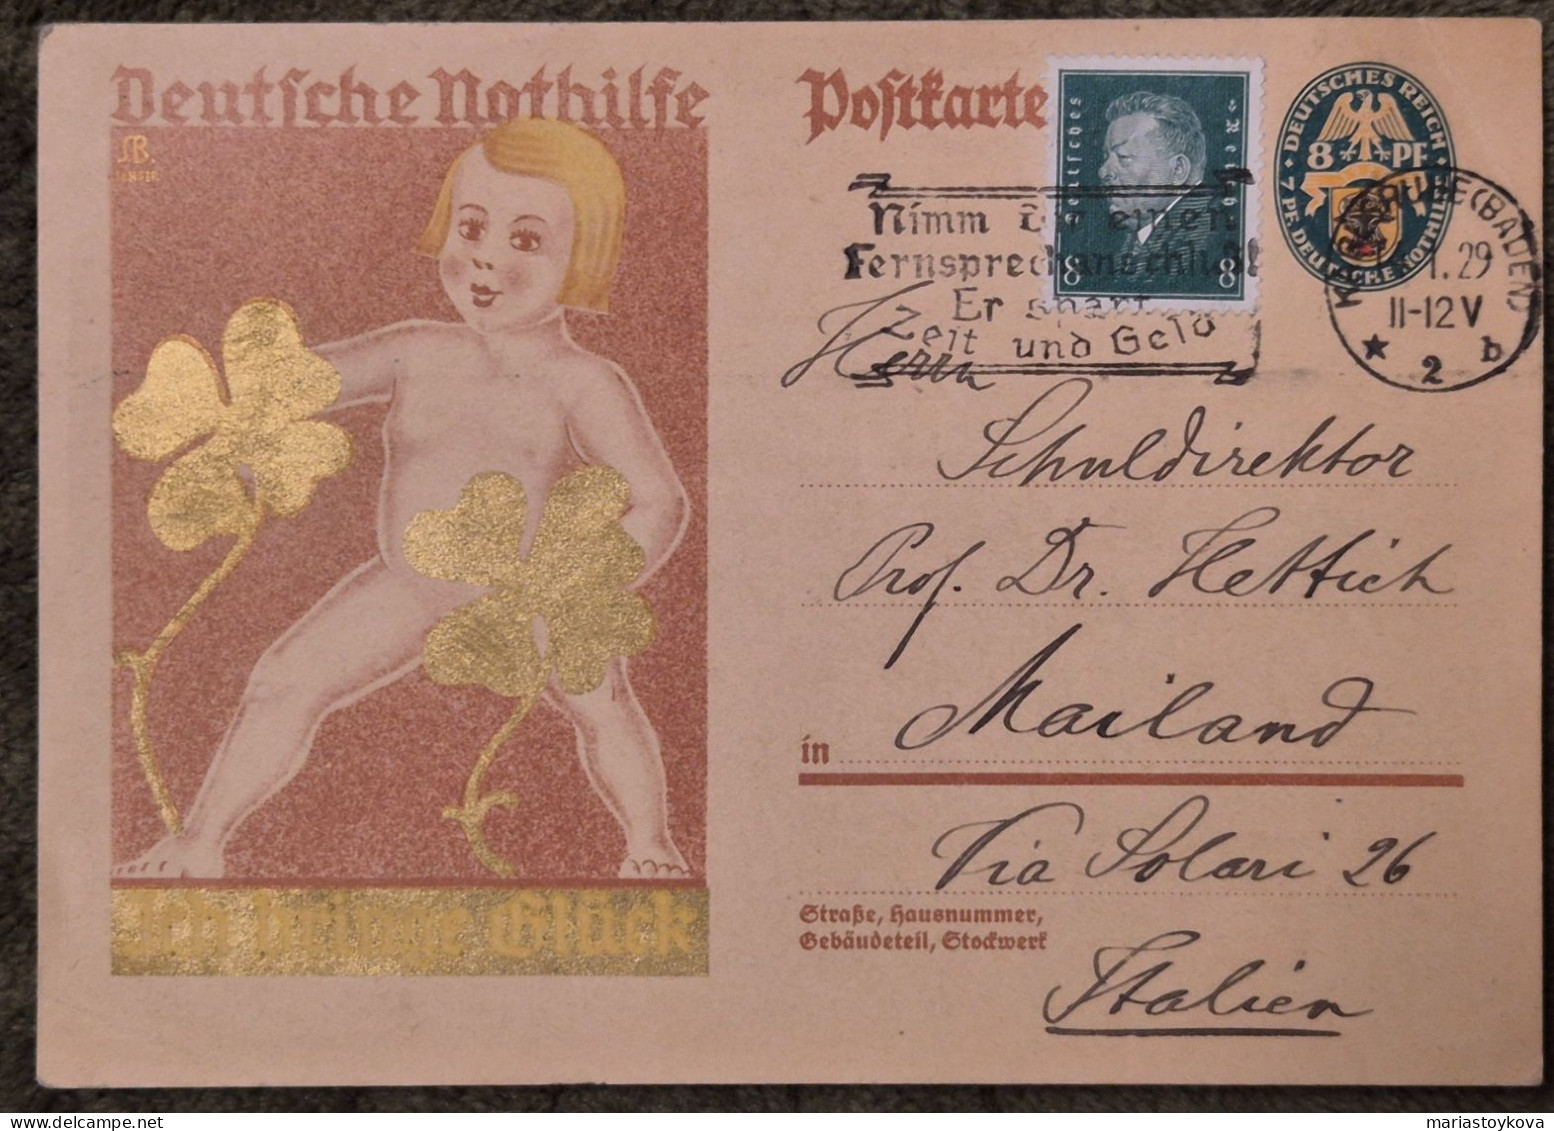 1929.Aus Karlsruhe Nach Mailand. Deutsche Nothilfe, Ich Bringe Glück, 8 Pfennig - Postkarten